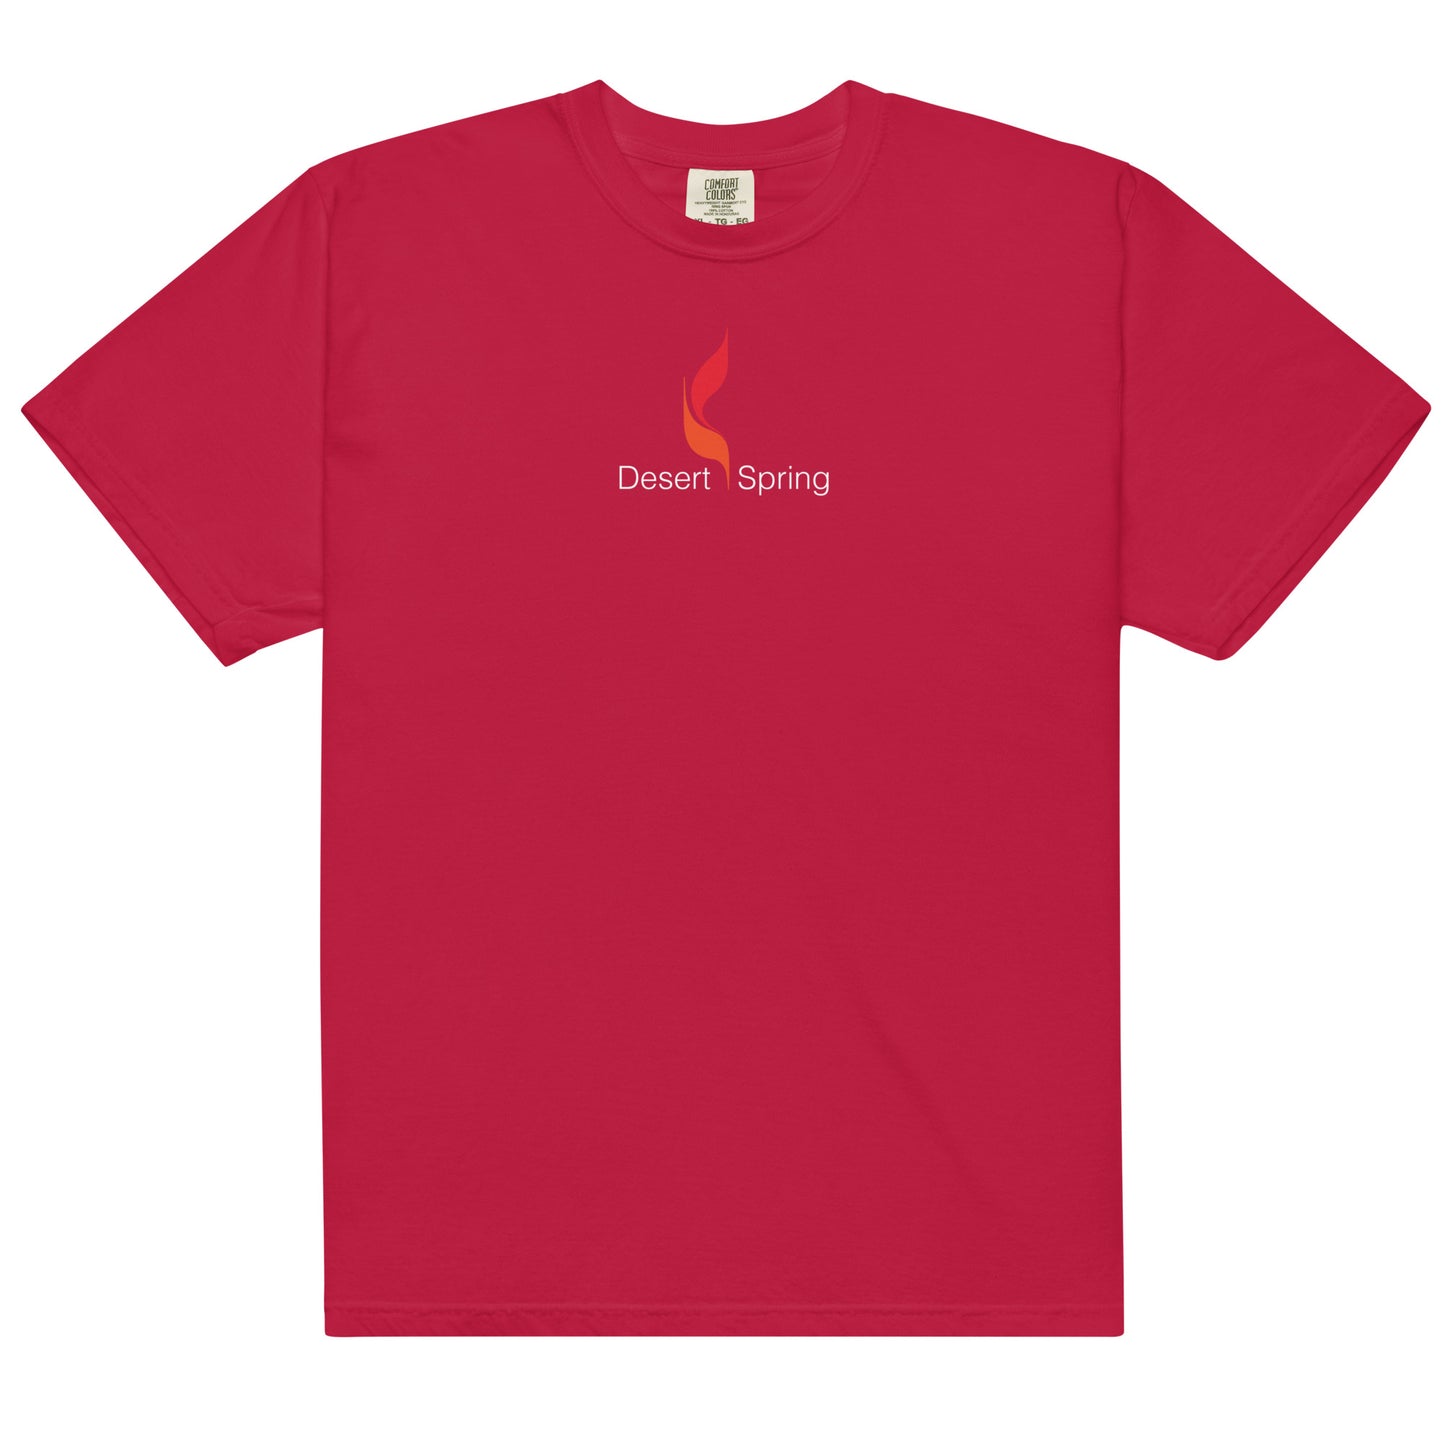 Men’s Desert Flame garment-dyed heavyweight t-shirt